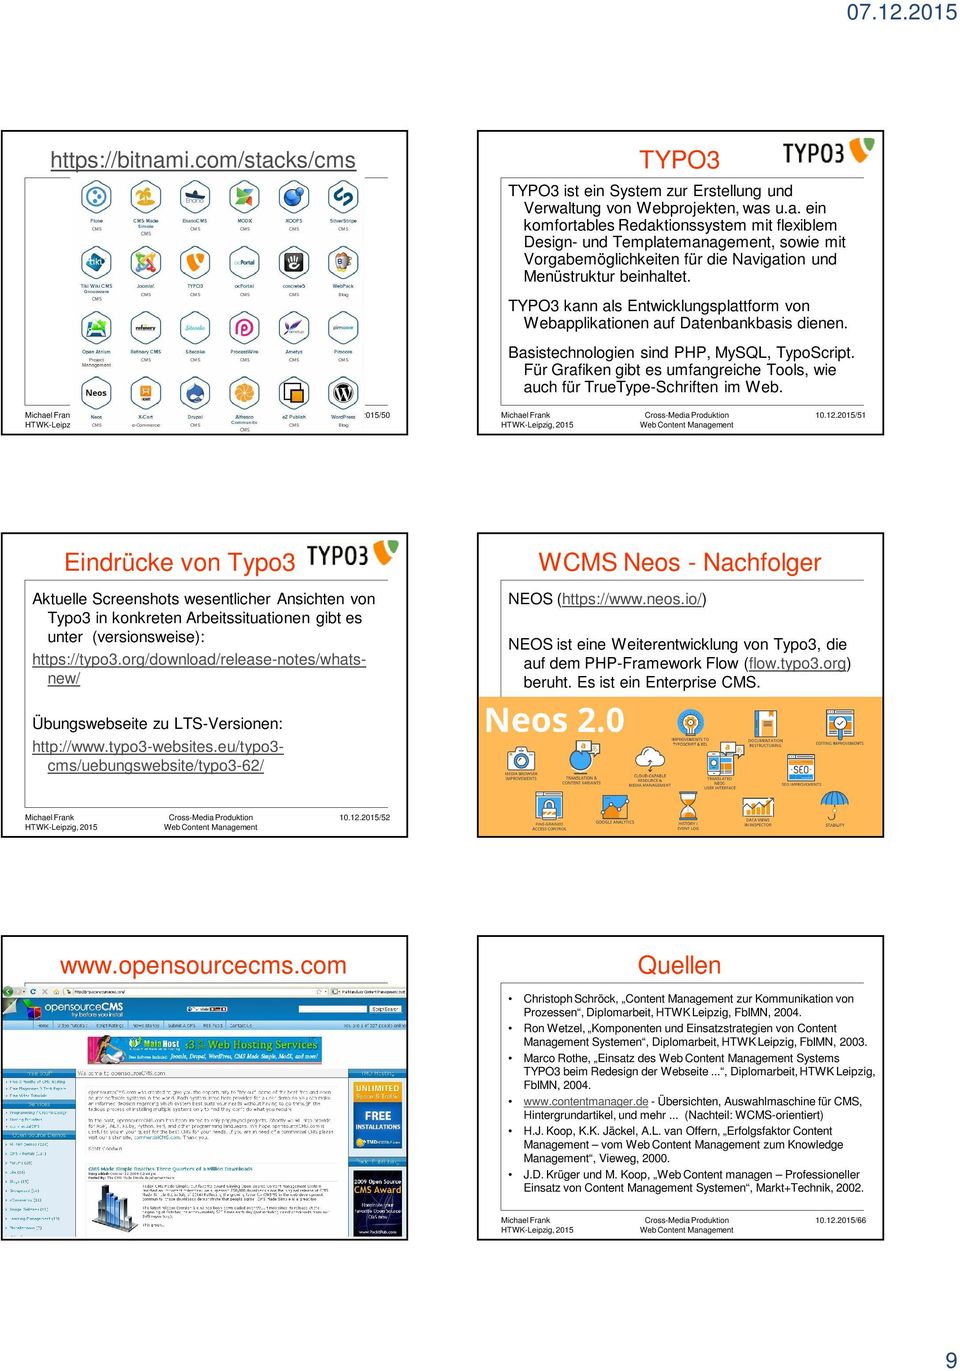 Für Grafiken gibt es umfangreiche Tools, wie auch für TrueType-Schriften im Web. 10.12.